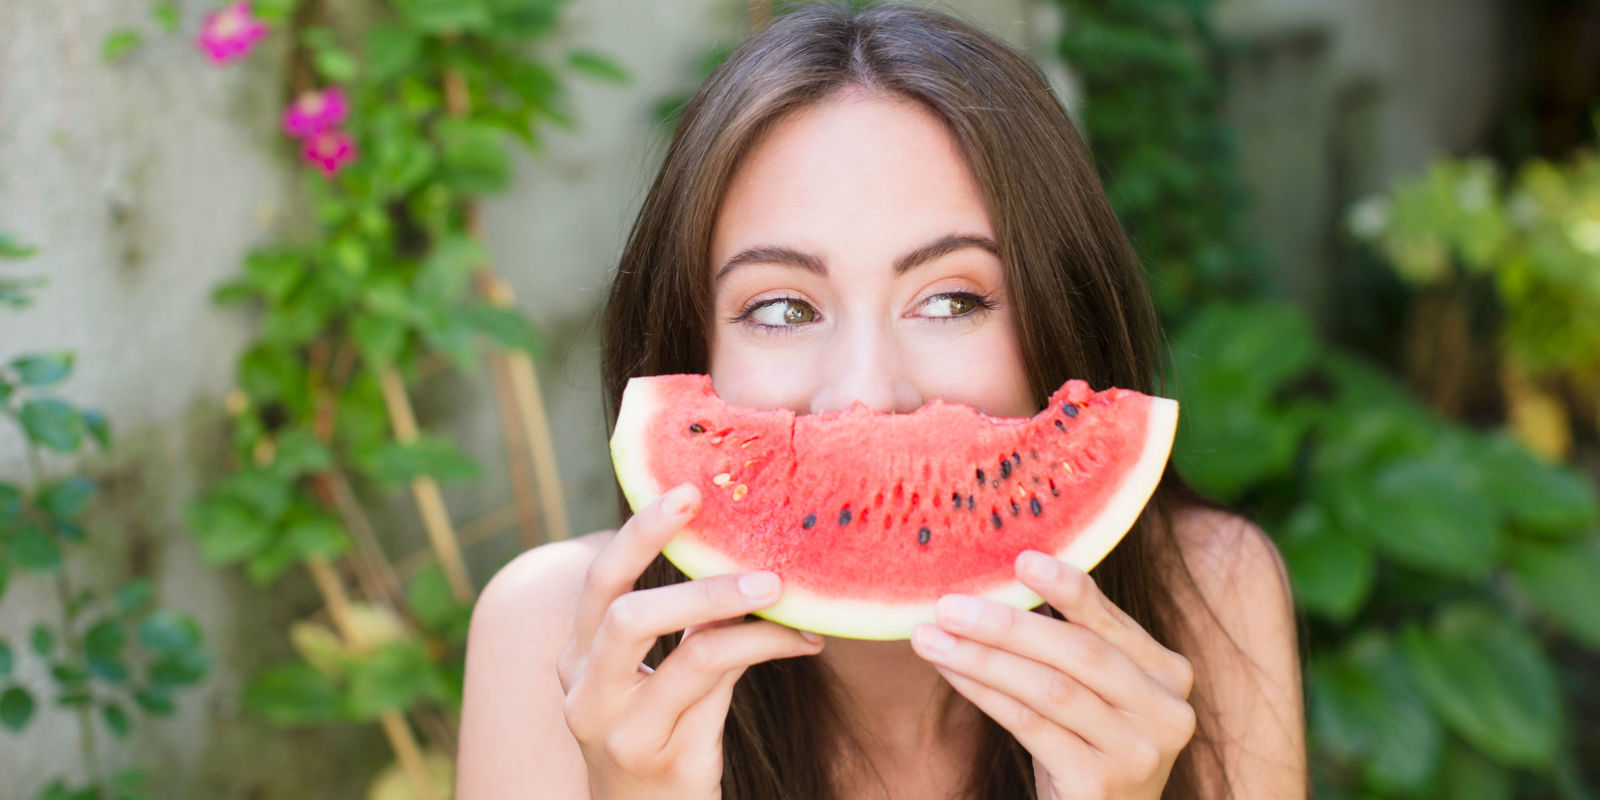 Previeni la disidratazione con questi 10 frutti che contengono molta acqua!